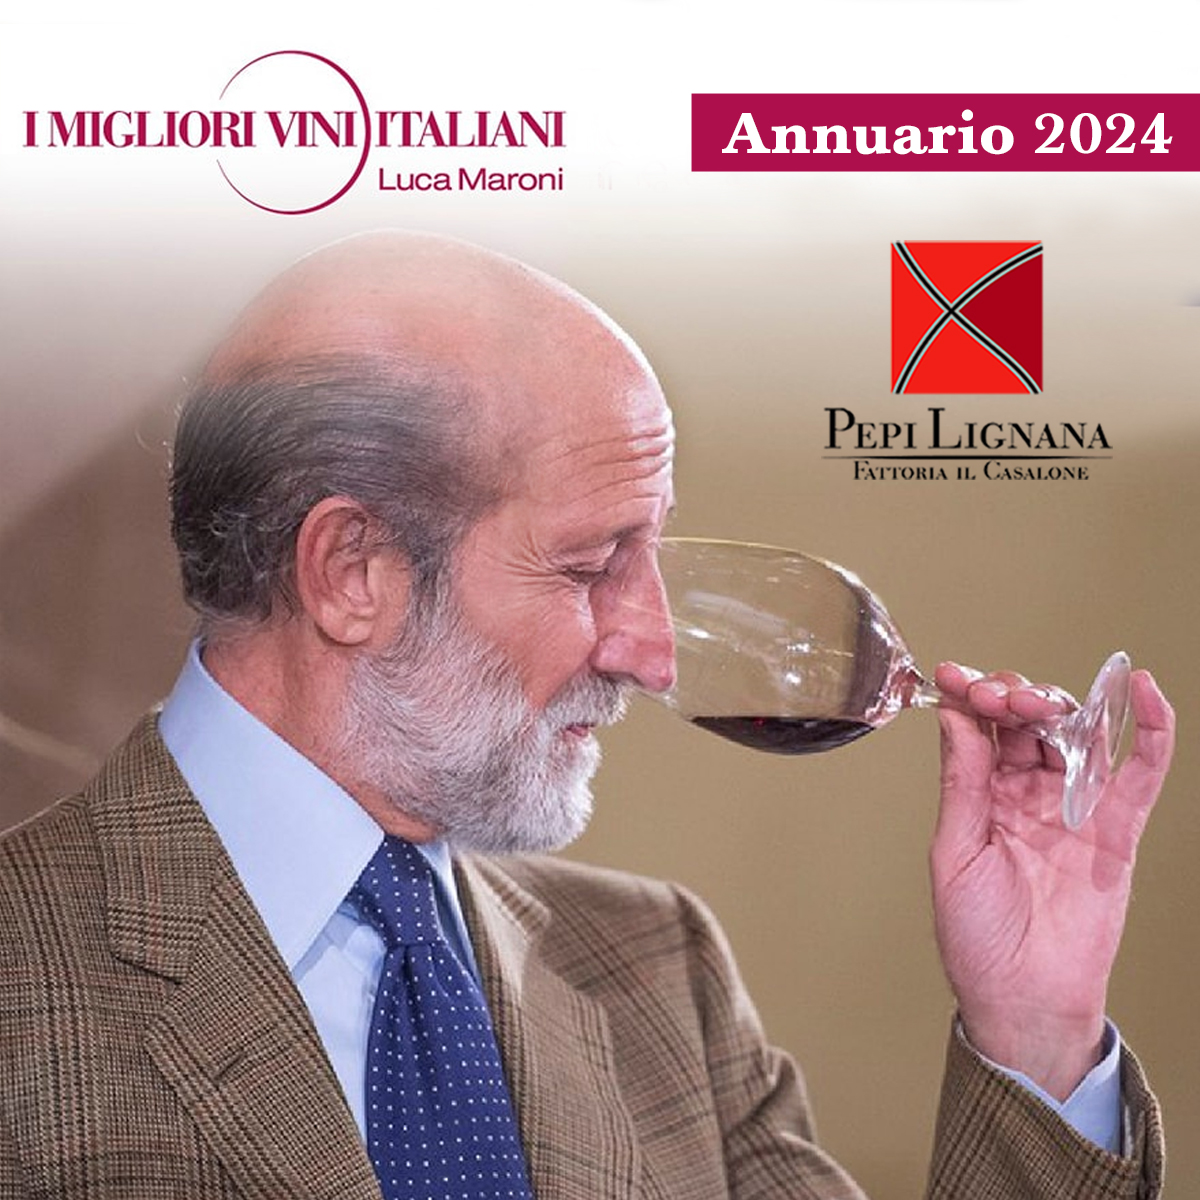 luca-maroni-annuario-migliori-vini-guida-2024-pepi-lignana-wine.jpg